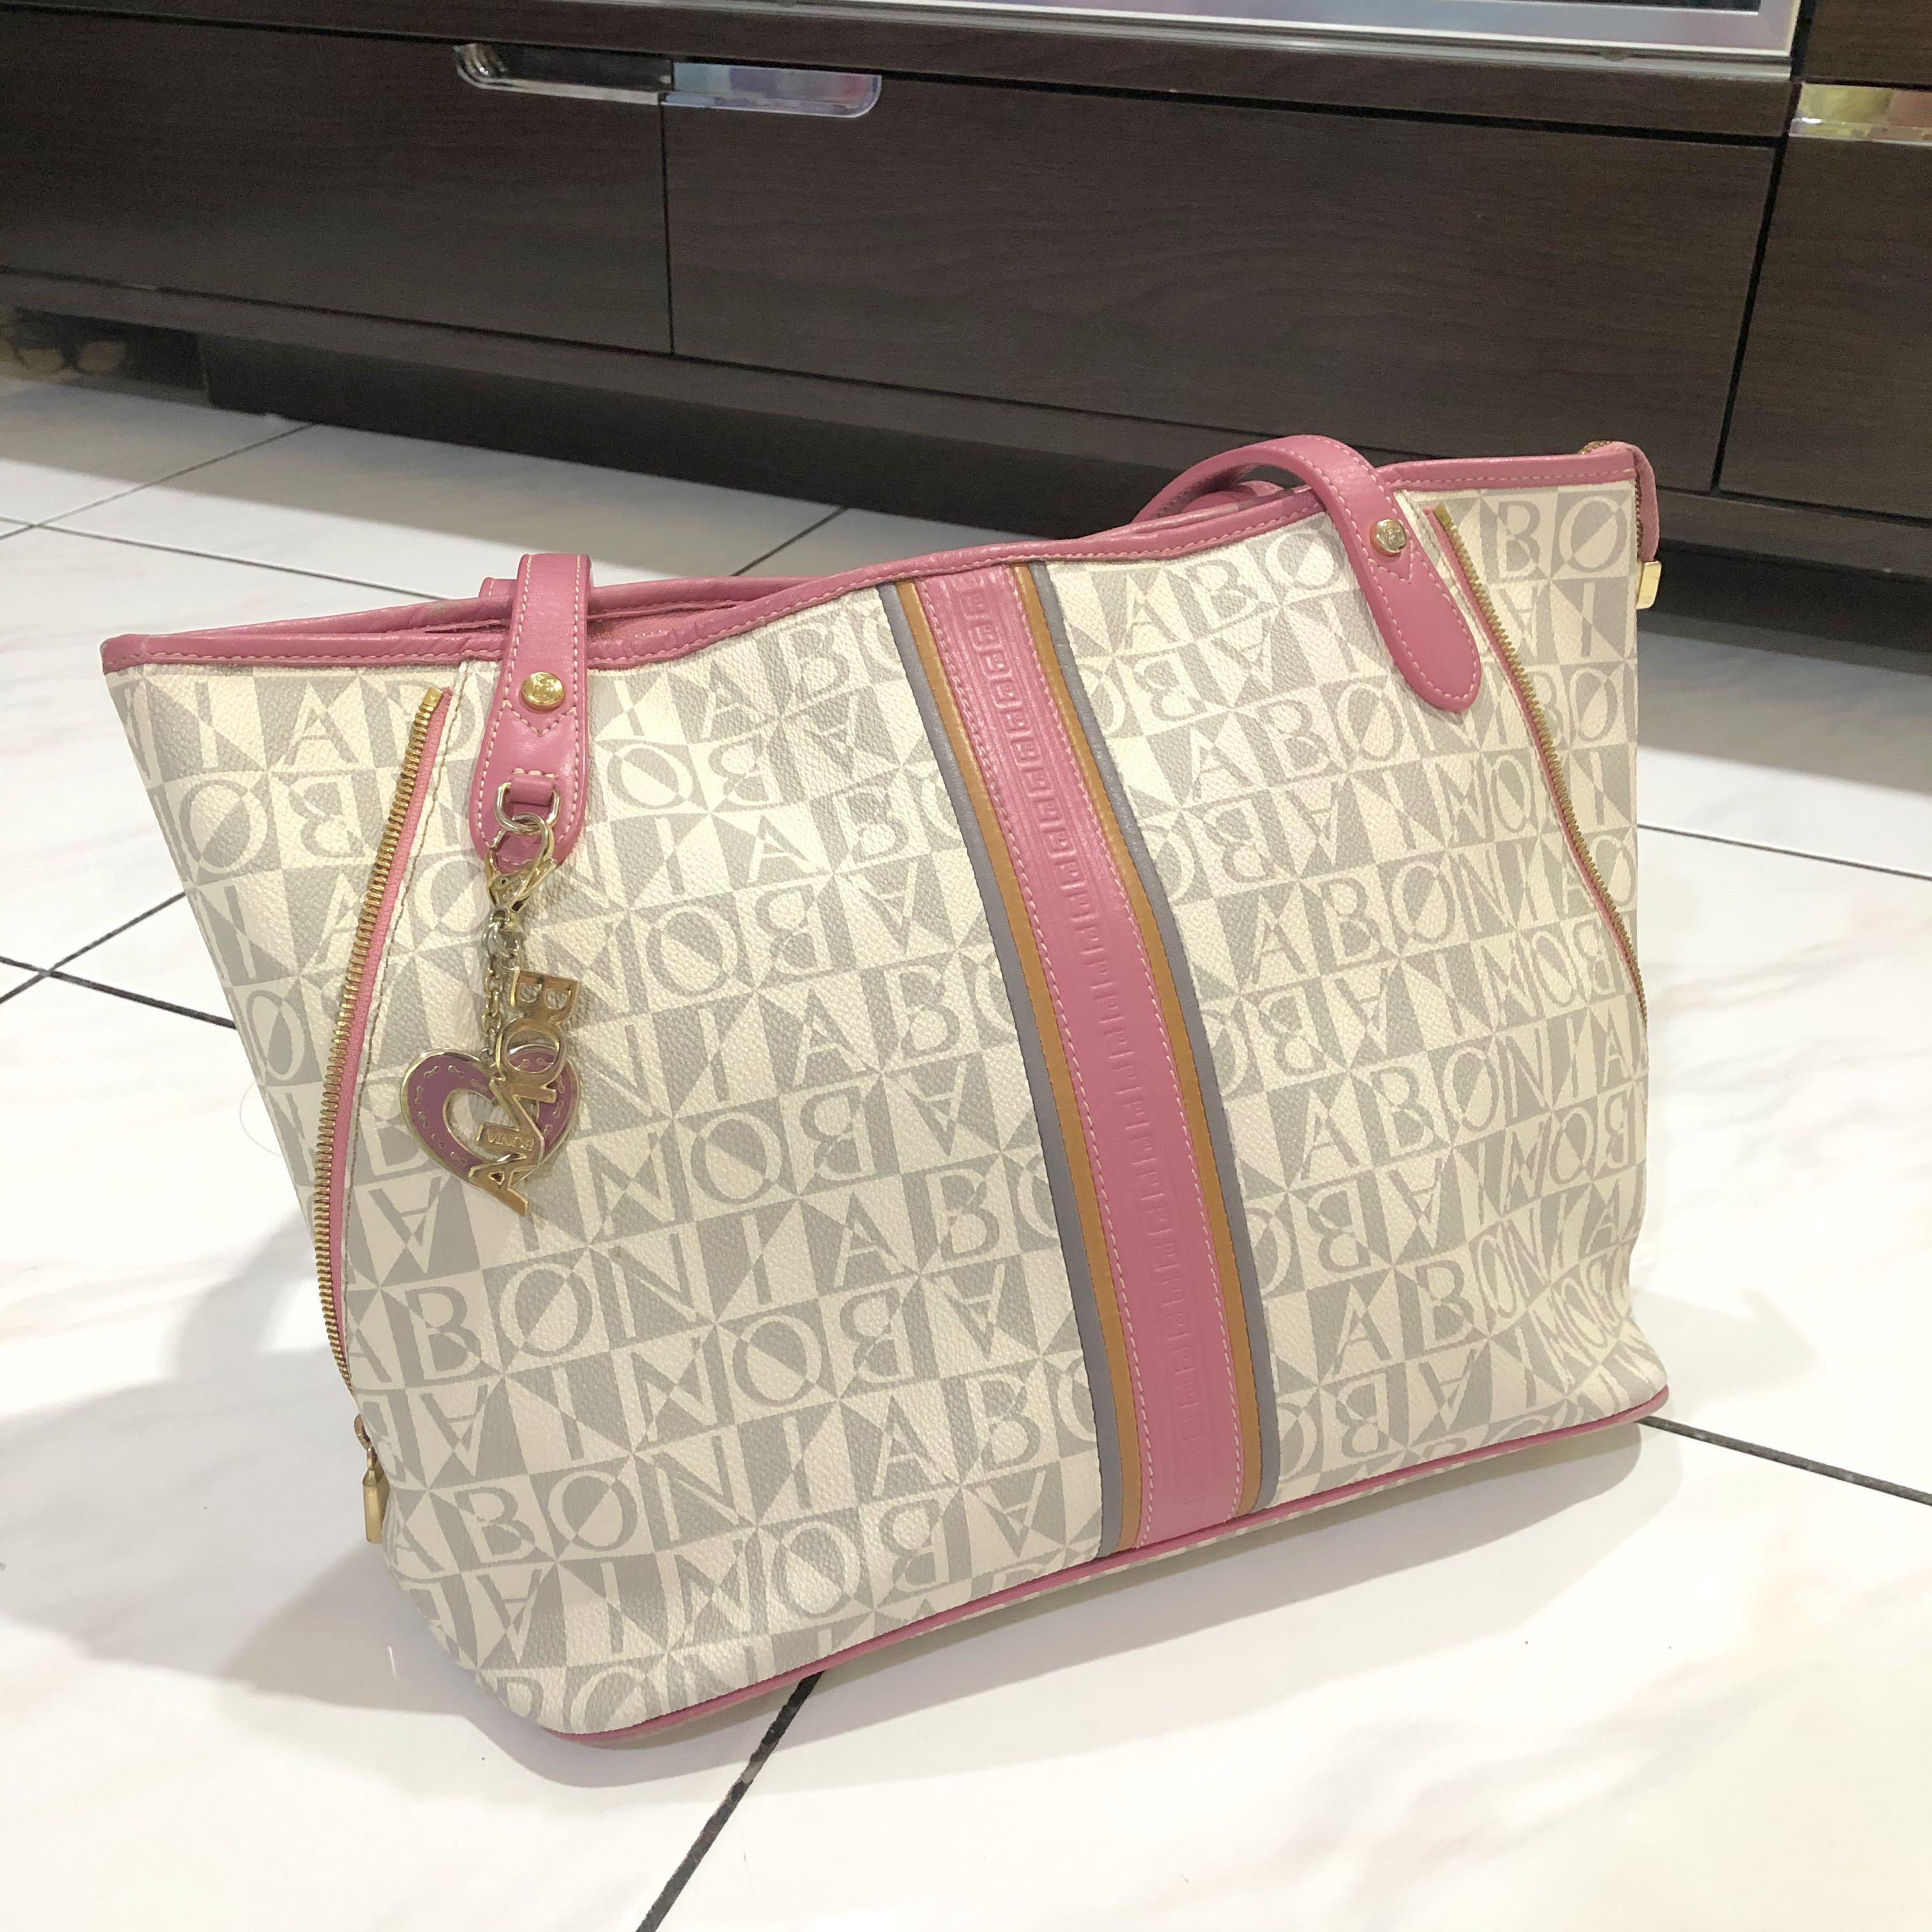 Jual tas bonia original sling tote bag rantai monogram putih pink singapore